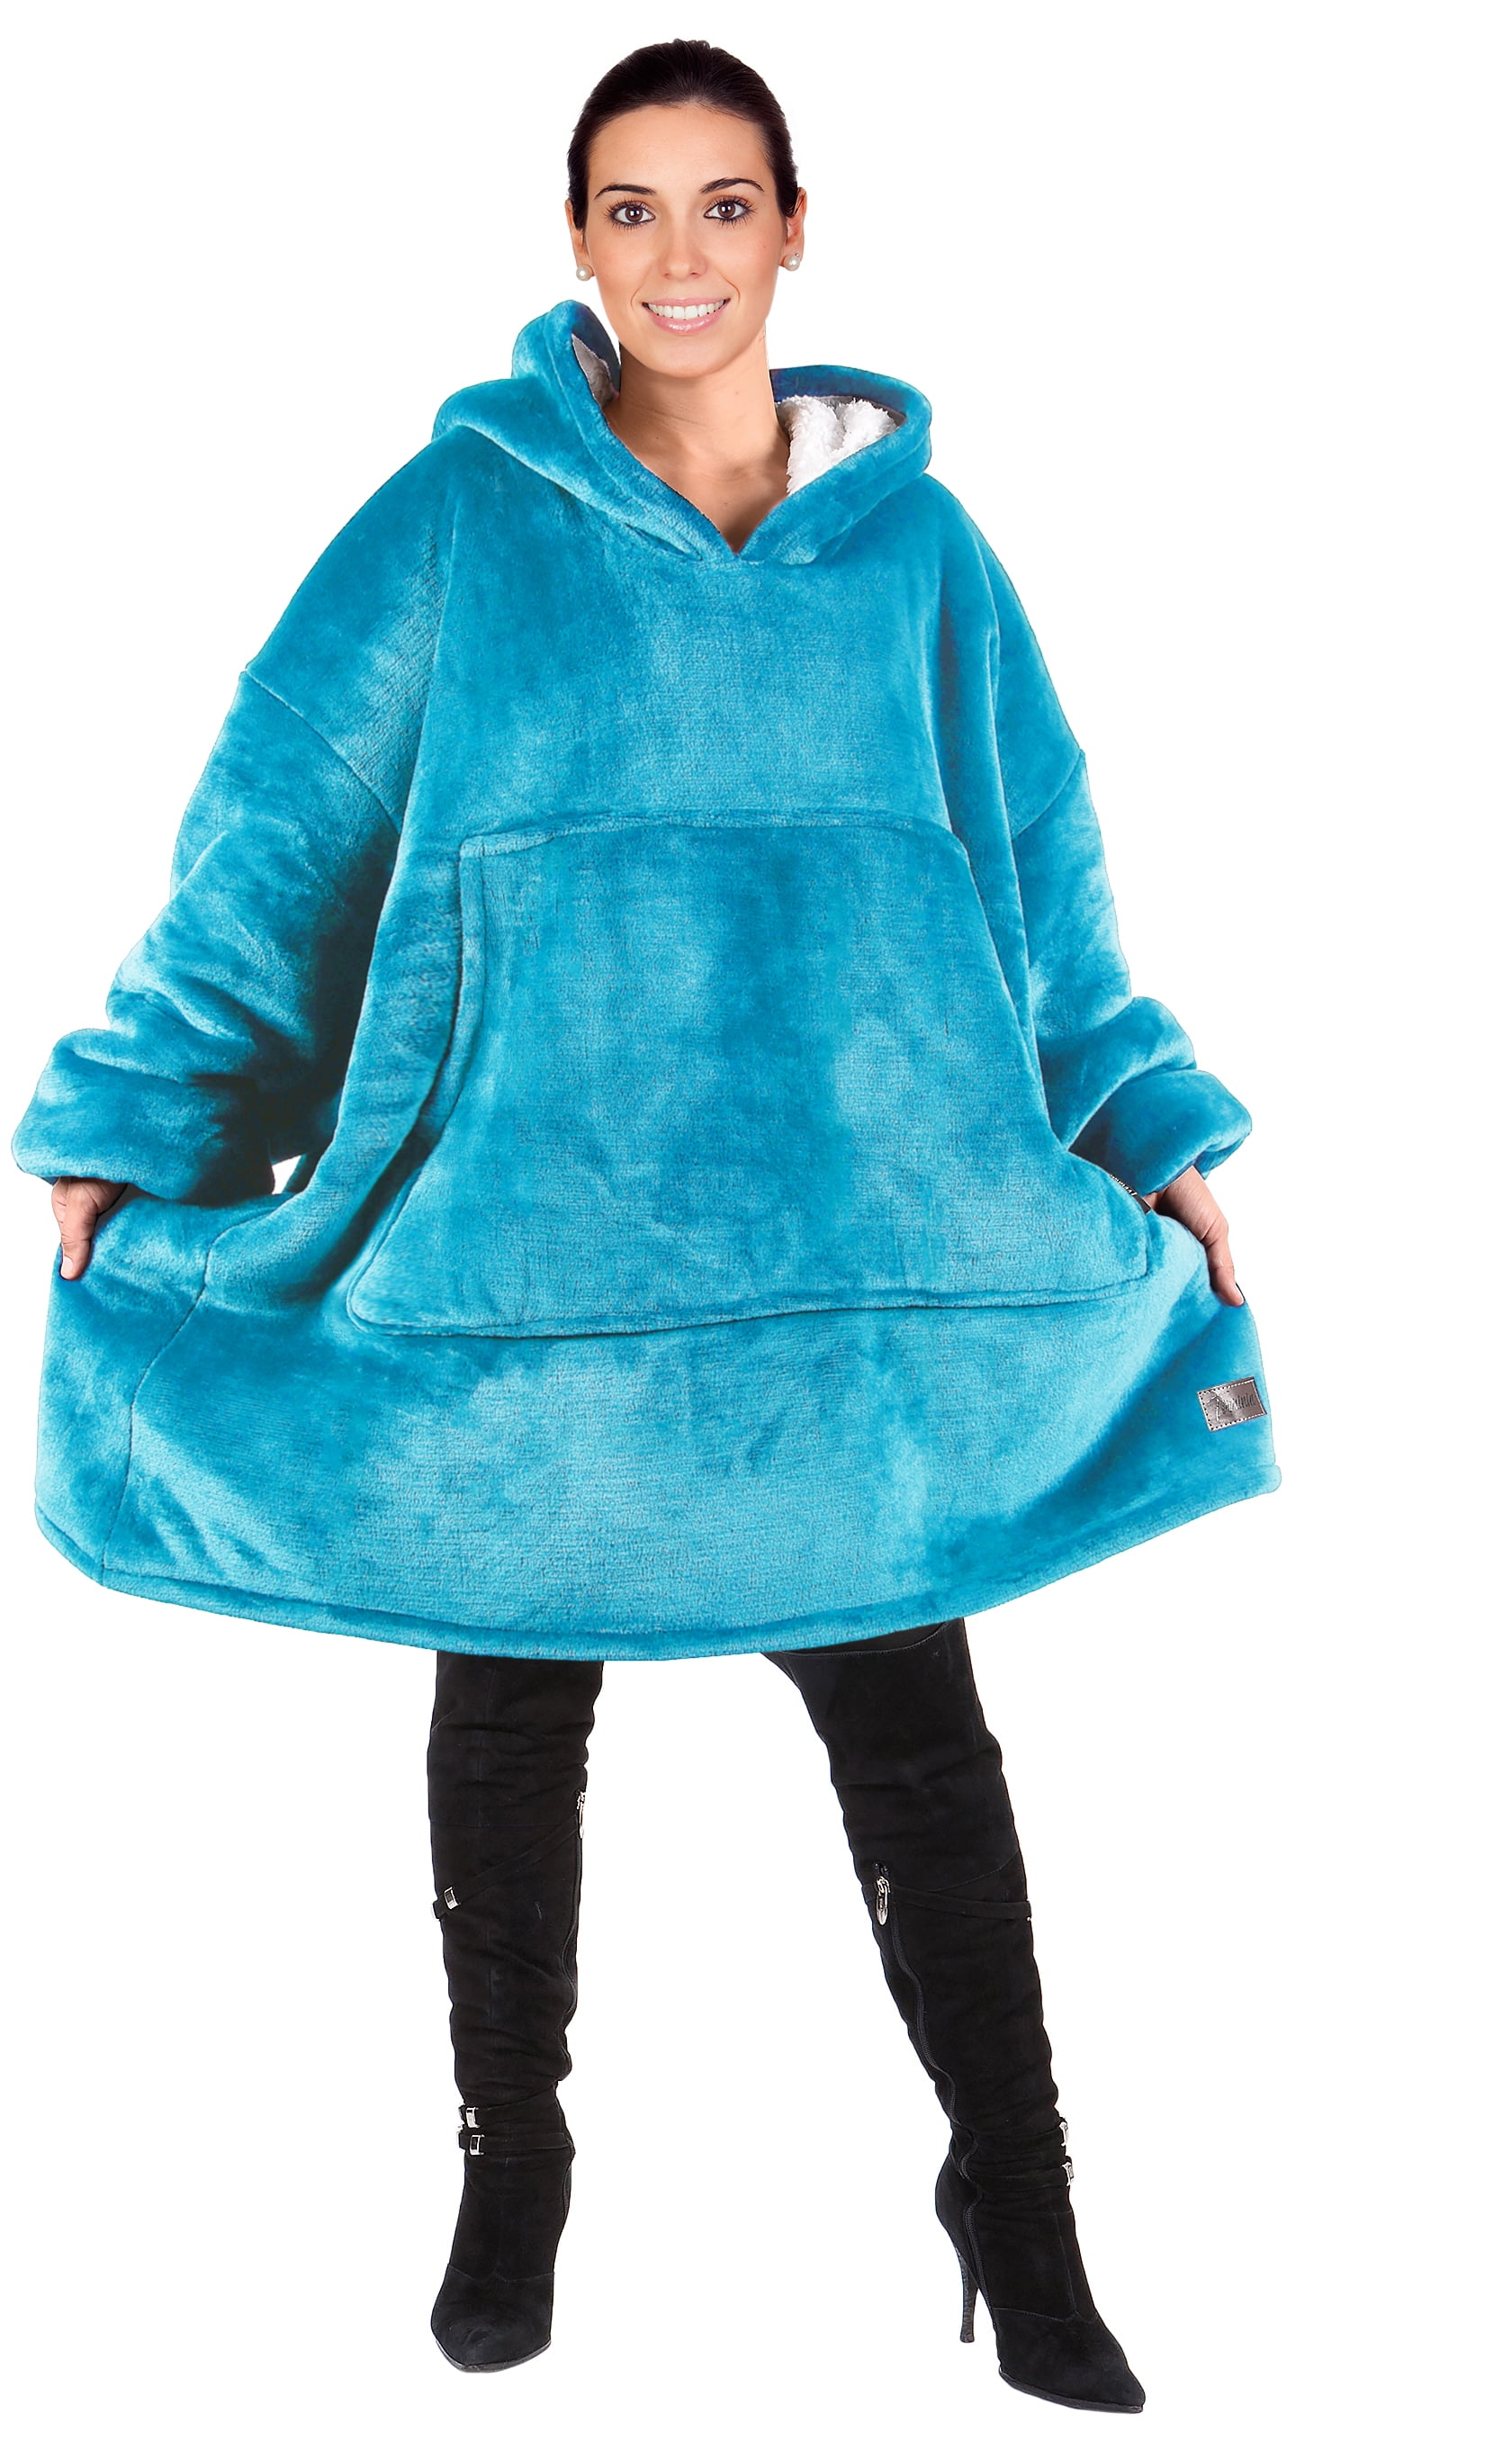 Soft Plush Hoodie Blanket Oversized Sherpa Sweatshirt One Size Fits All Adults Kids Men Women 